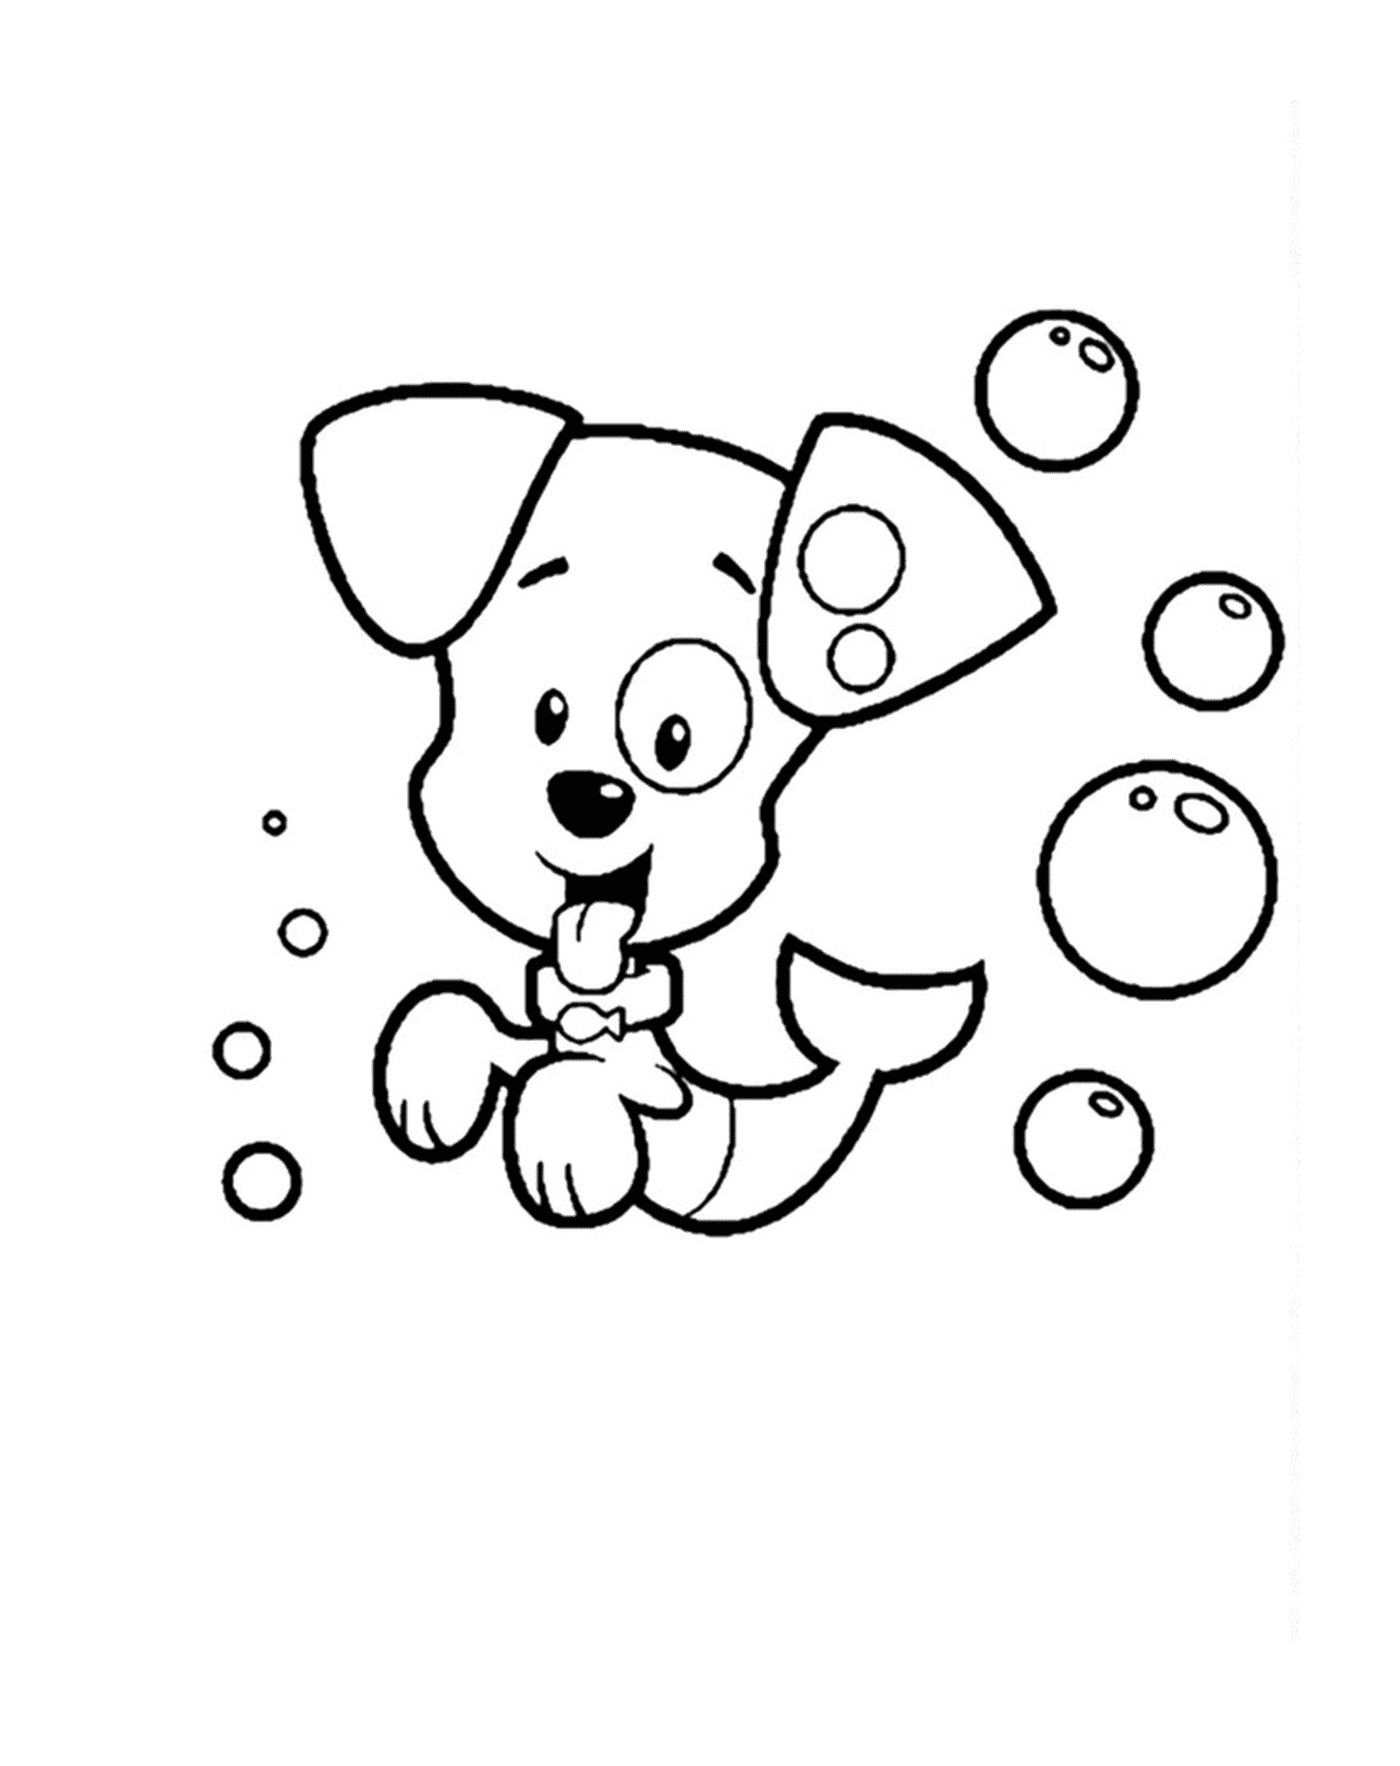  Собака, окруженная пузырями 